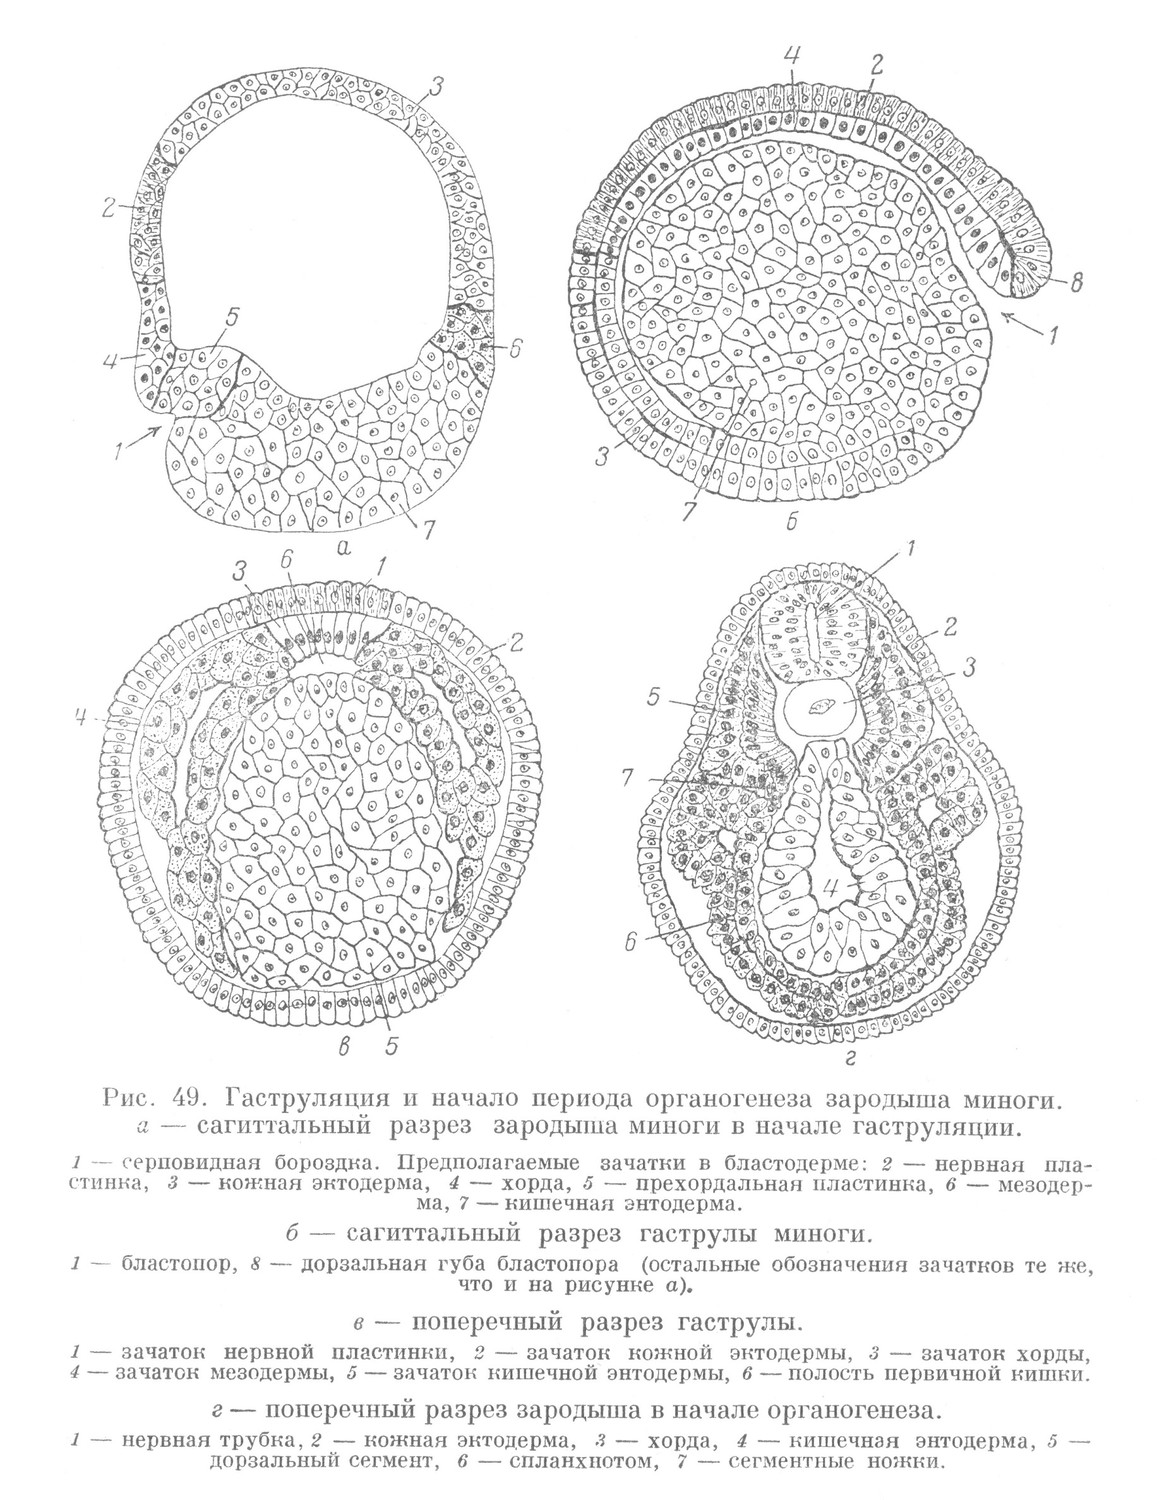 Гаструляция и начало периода органогенеза зародыша миноги